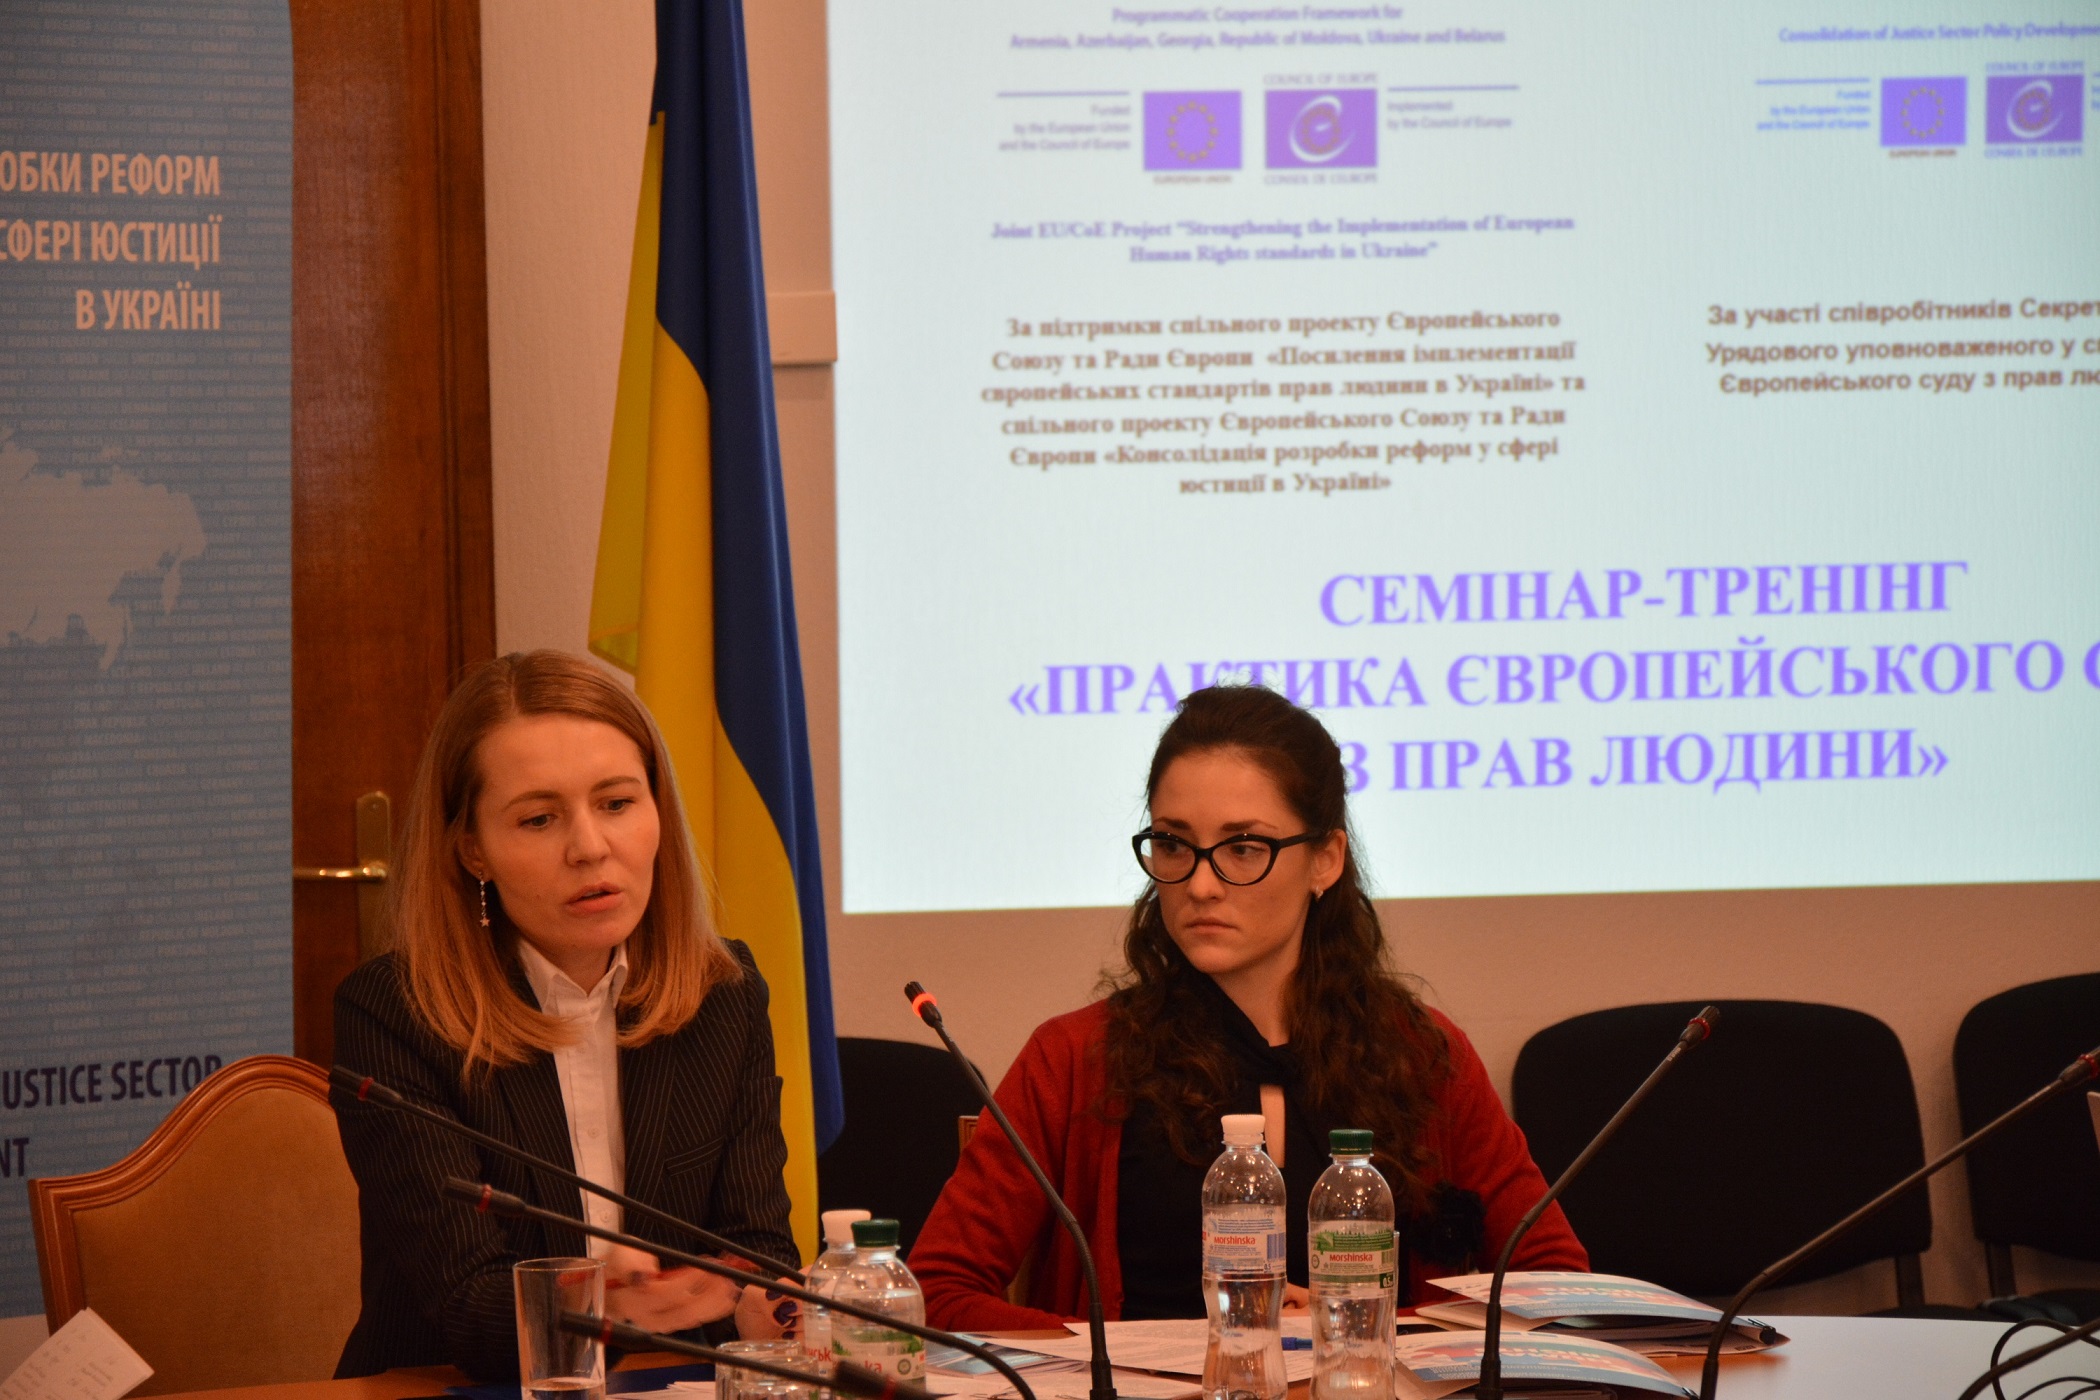 Cемінари-тренінги щодо практики застосування Європейського суду з прав людини для співробітників Апарату Верховної Ради України